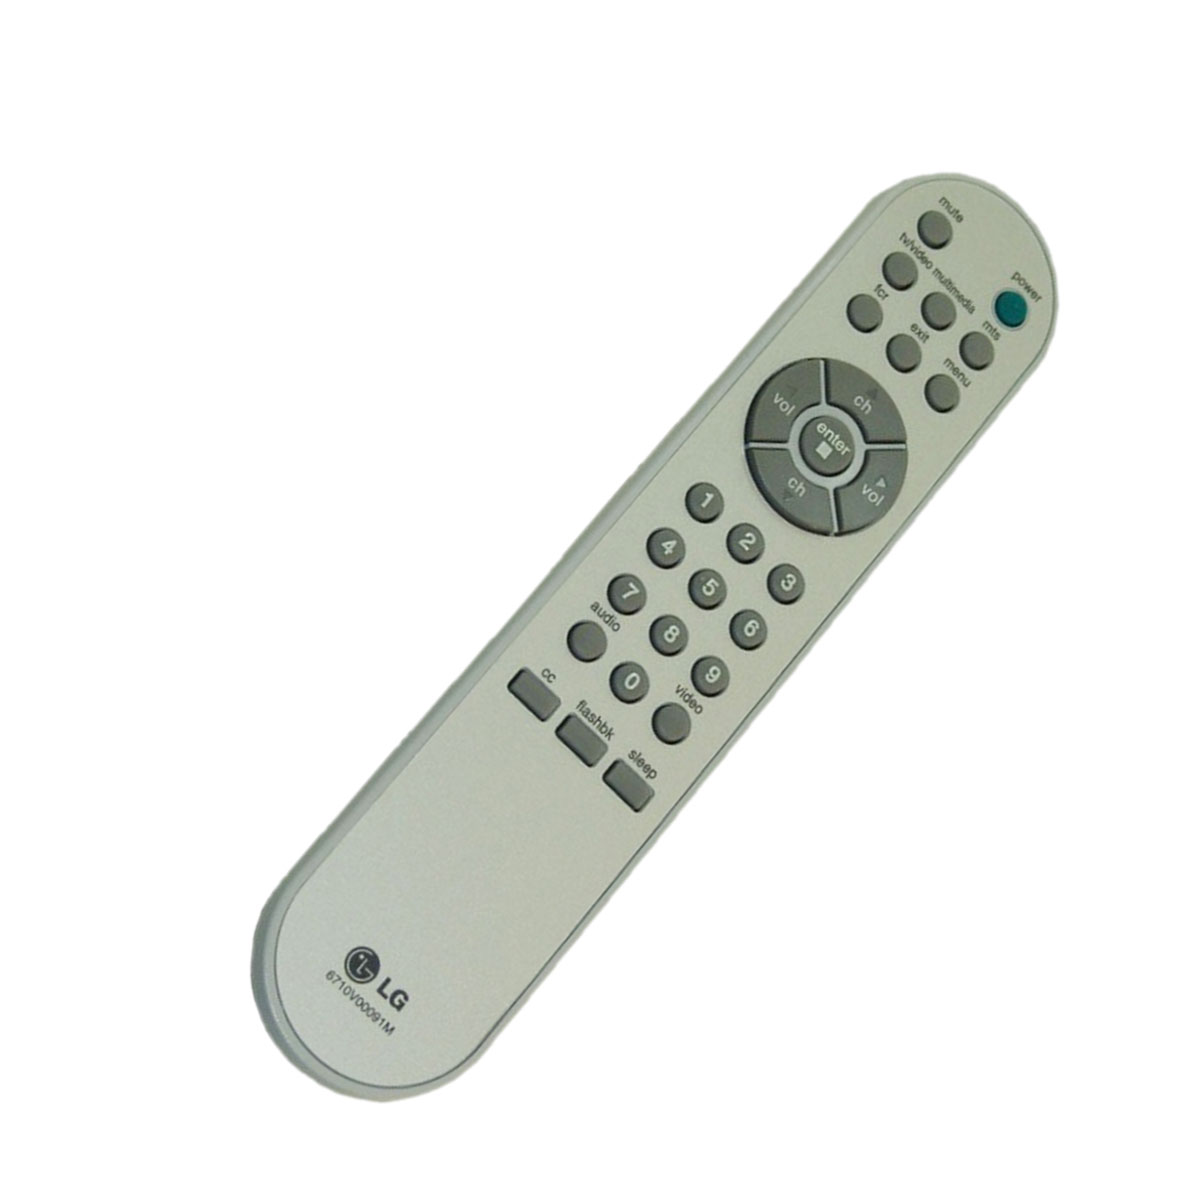 LG Original TV Remote Control for LG 15LA6R Television